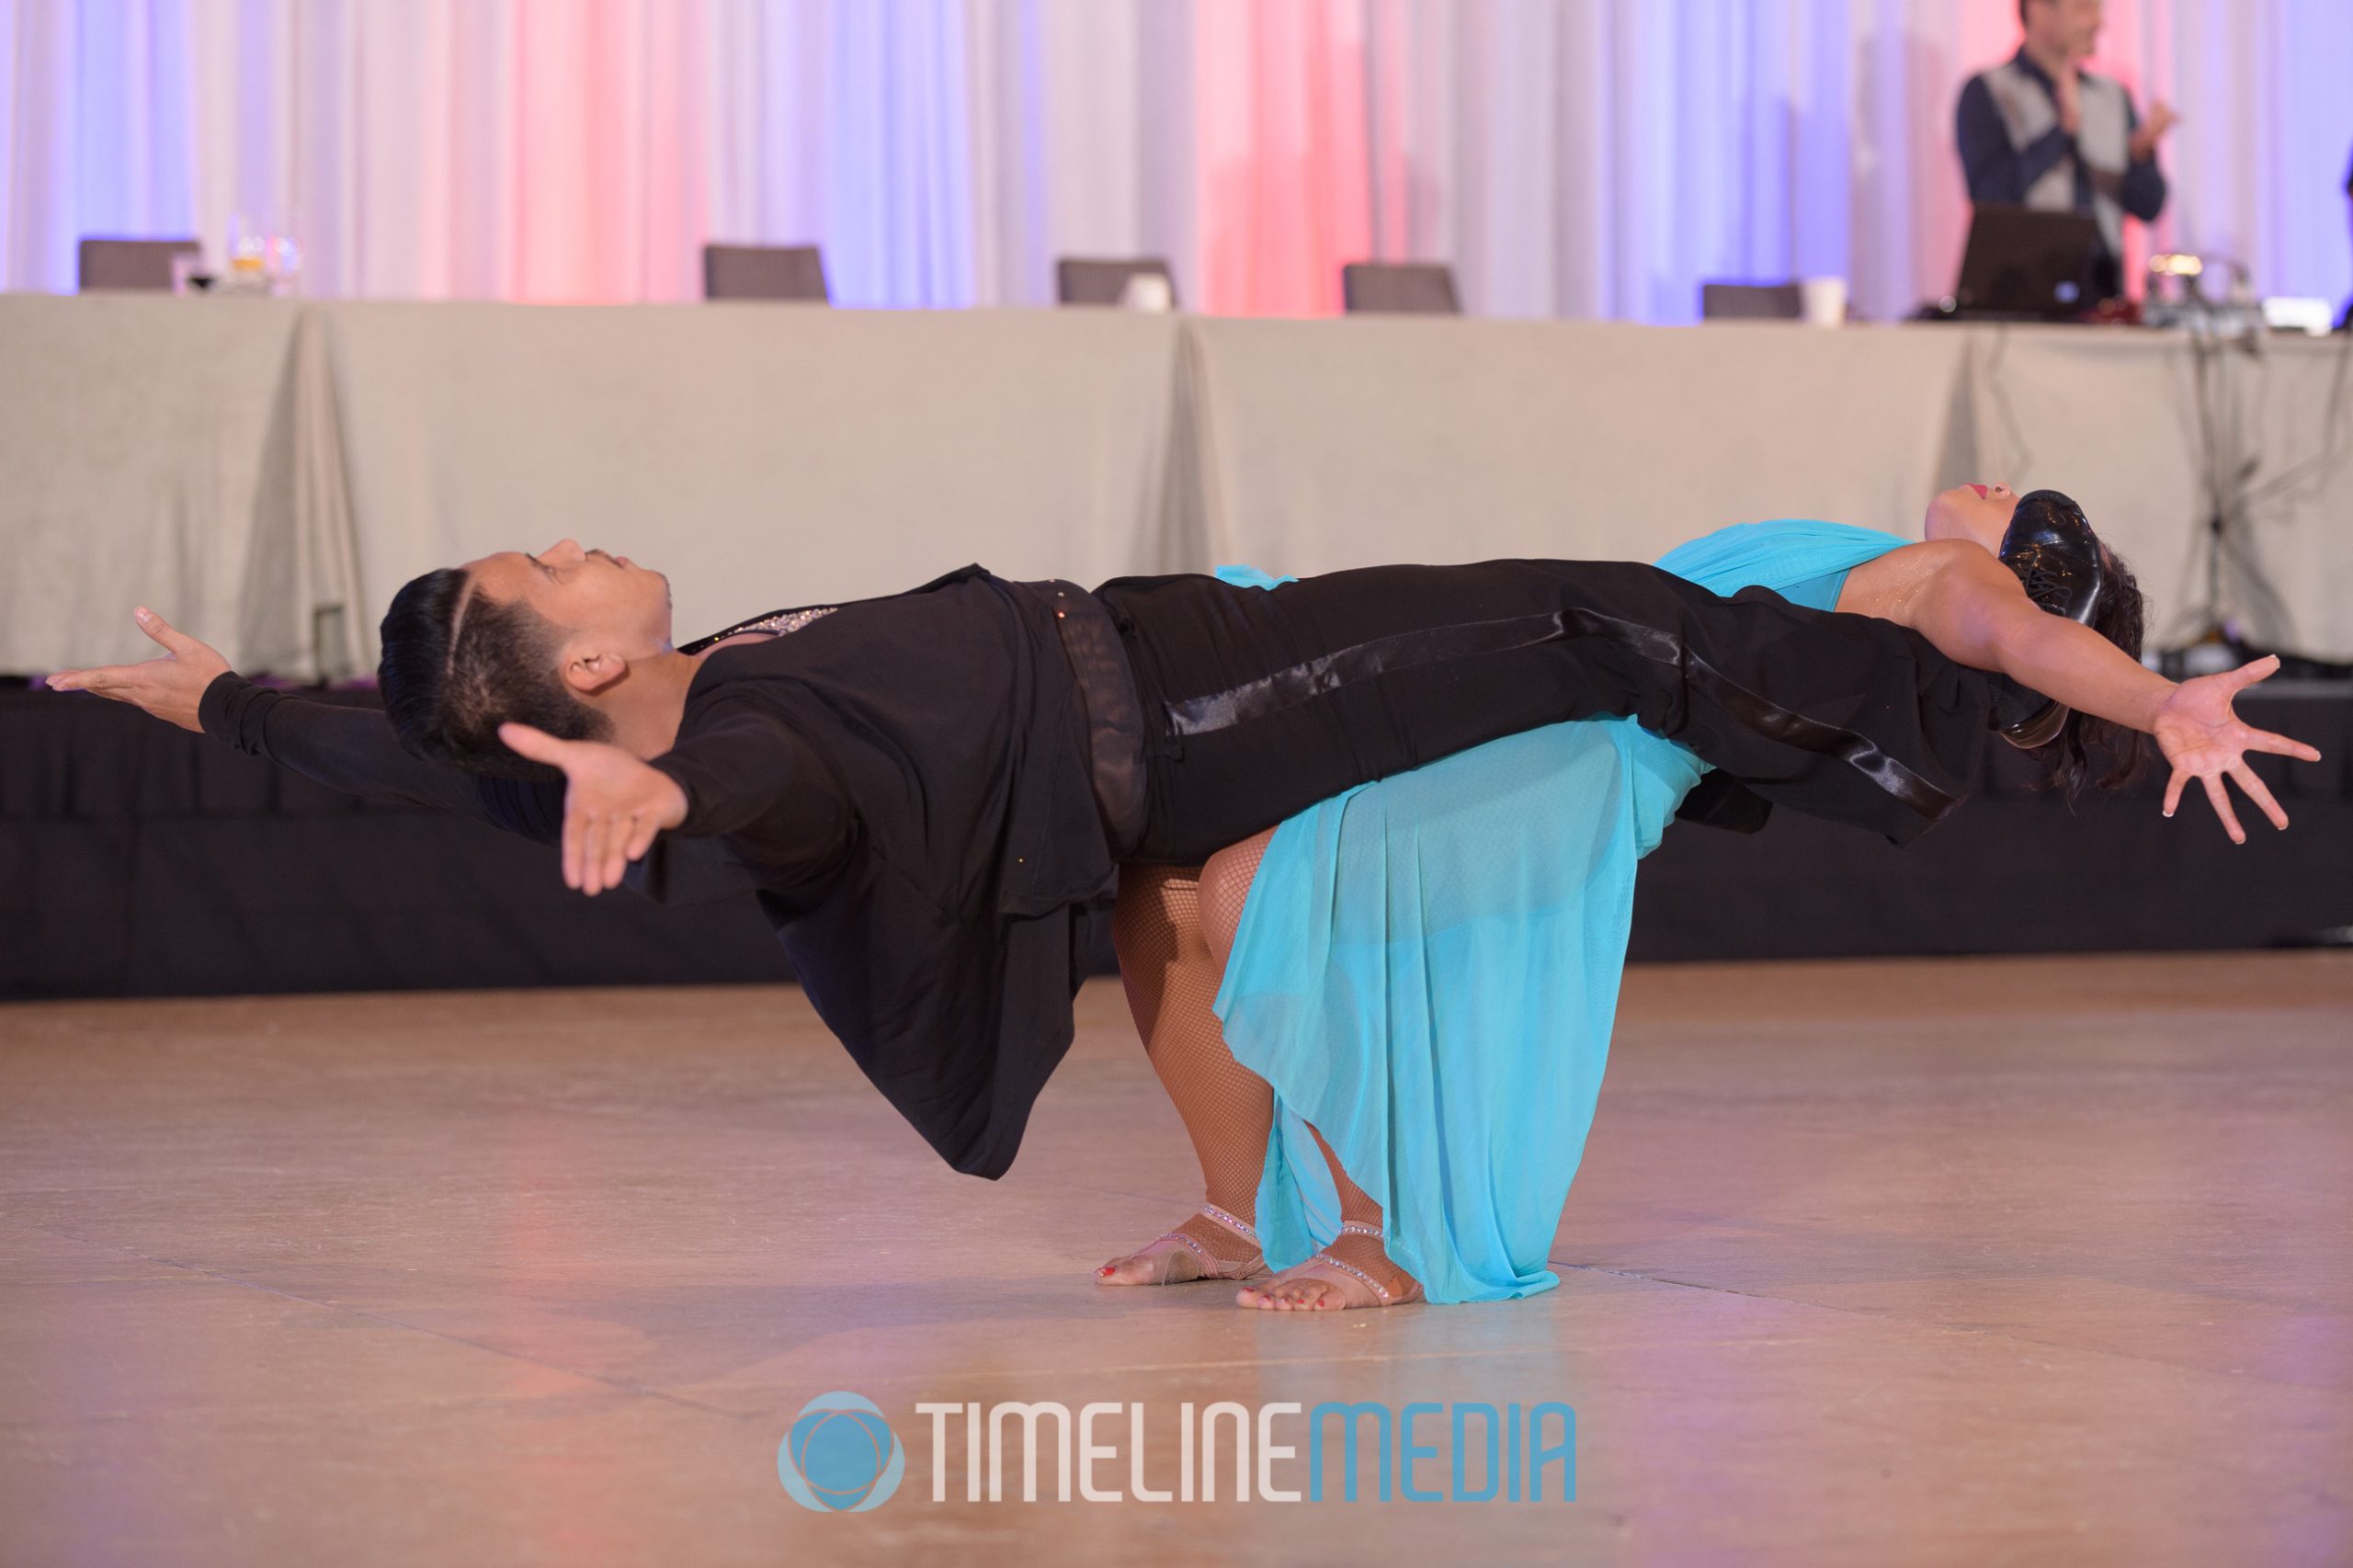 Sheena Daminar and Jungie Zamora performance ©TimeLine Media